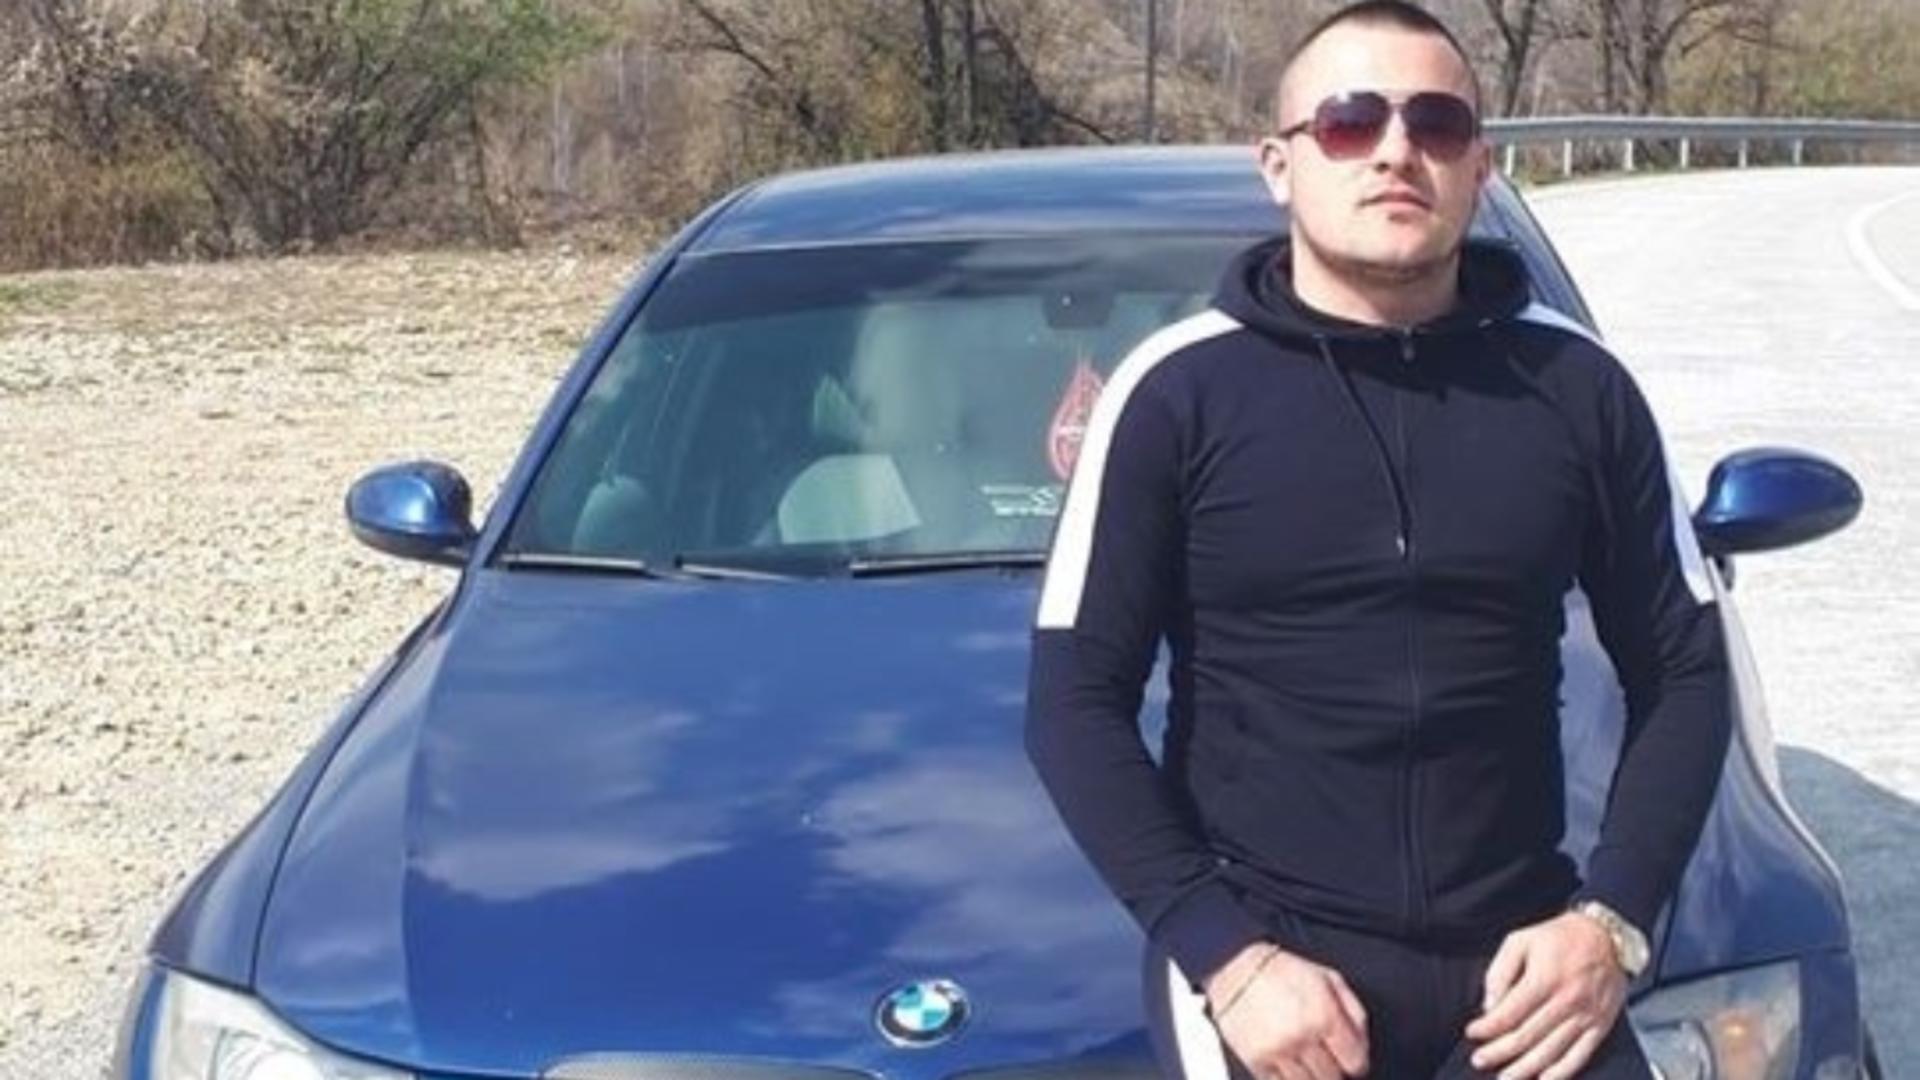 Mihai Dafinescu va fi judecat în libertate, deși a omorît un om și a părăsit locul accidentului. Foto/viatagorjului.ro